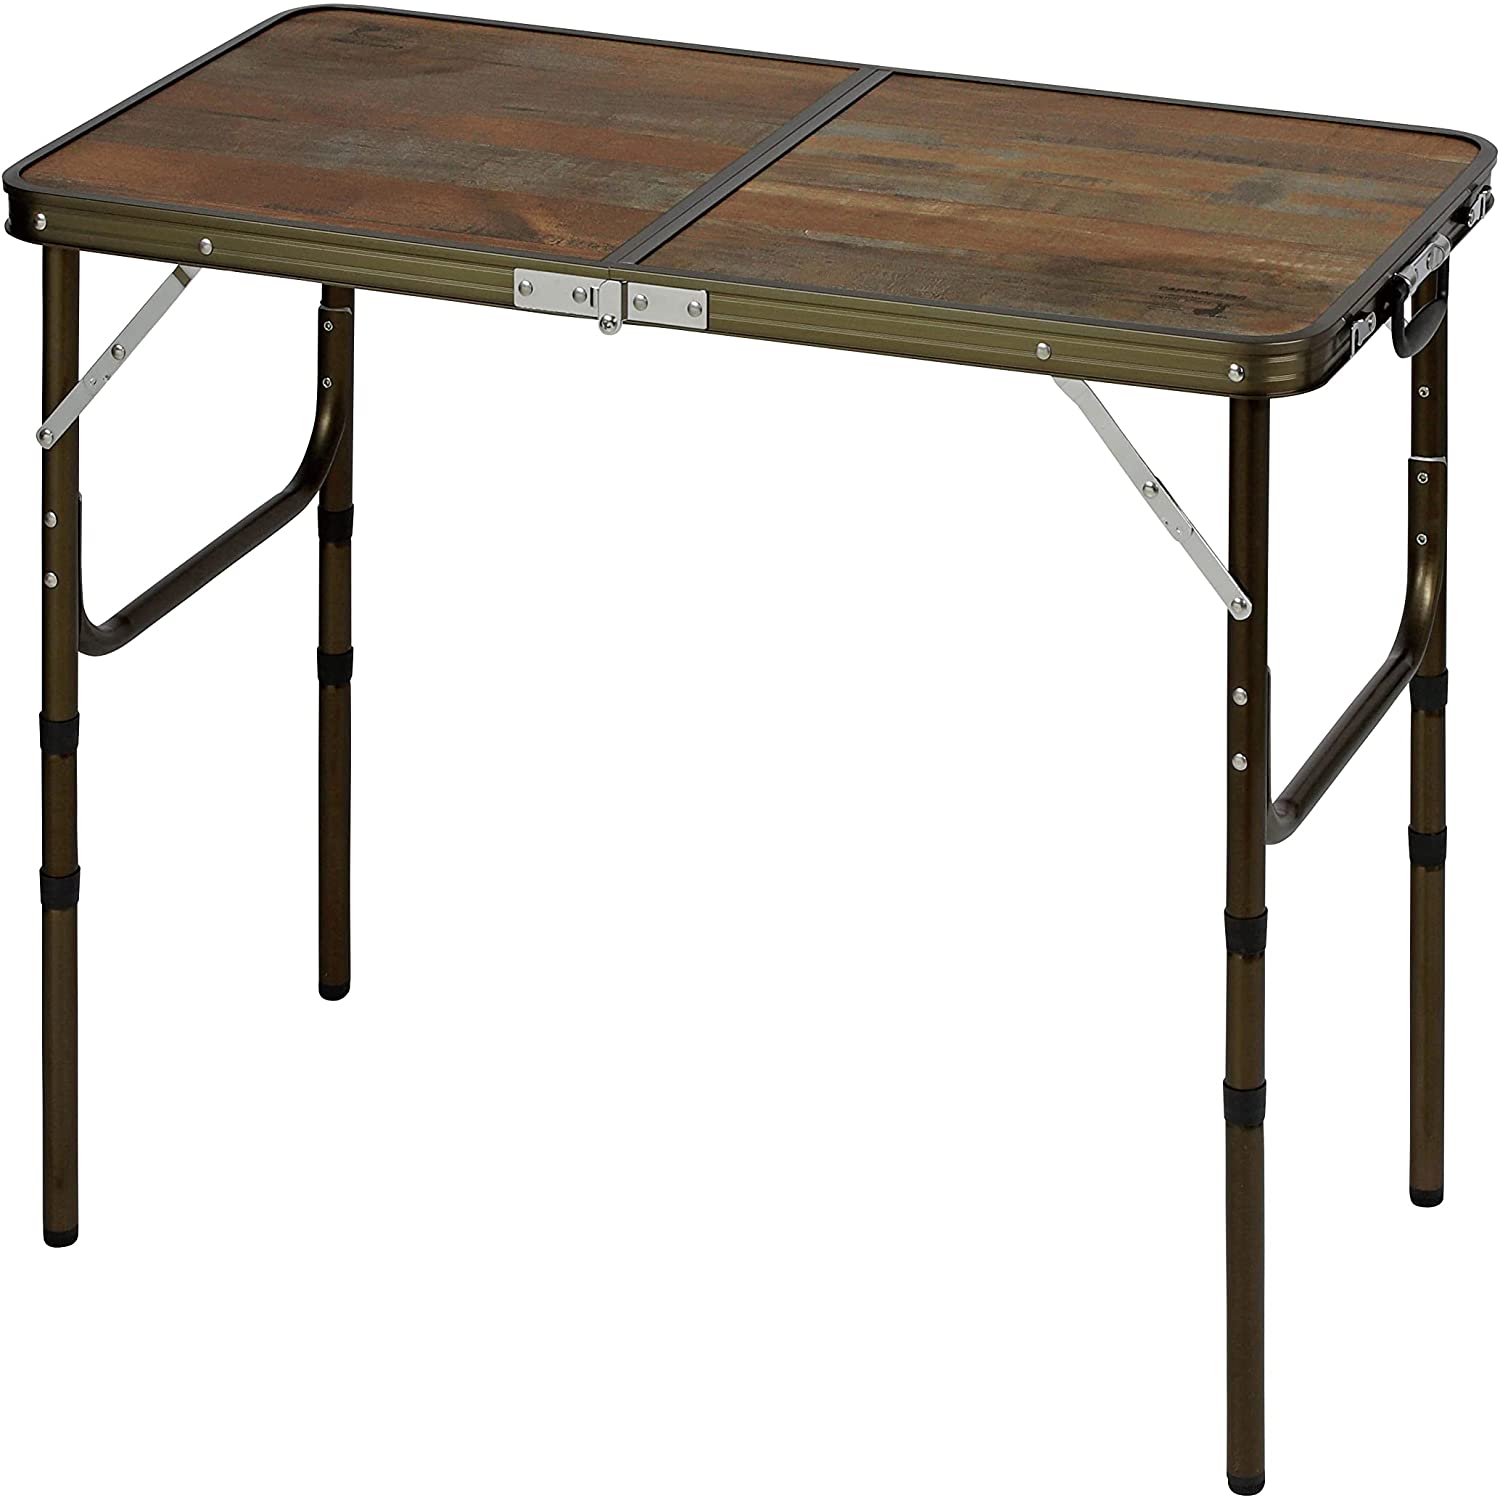 適切な価格 キャプテンスタッグ(CAPTAIN STAG) アウトドアテーブル テーブル フォールディングテーブ テーブル